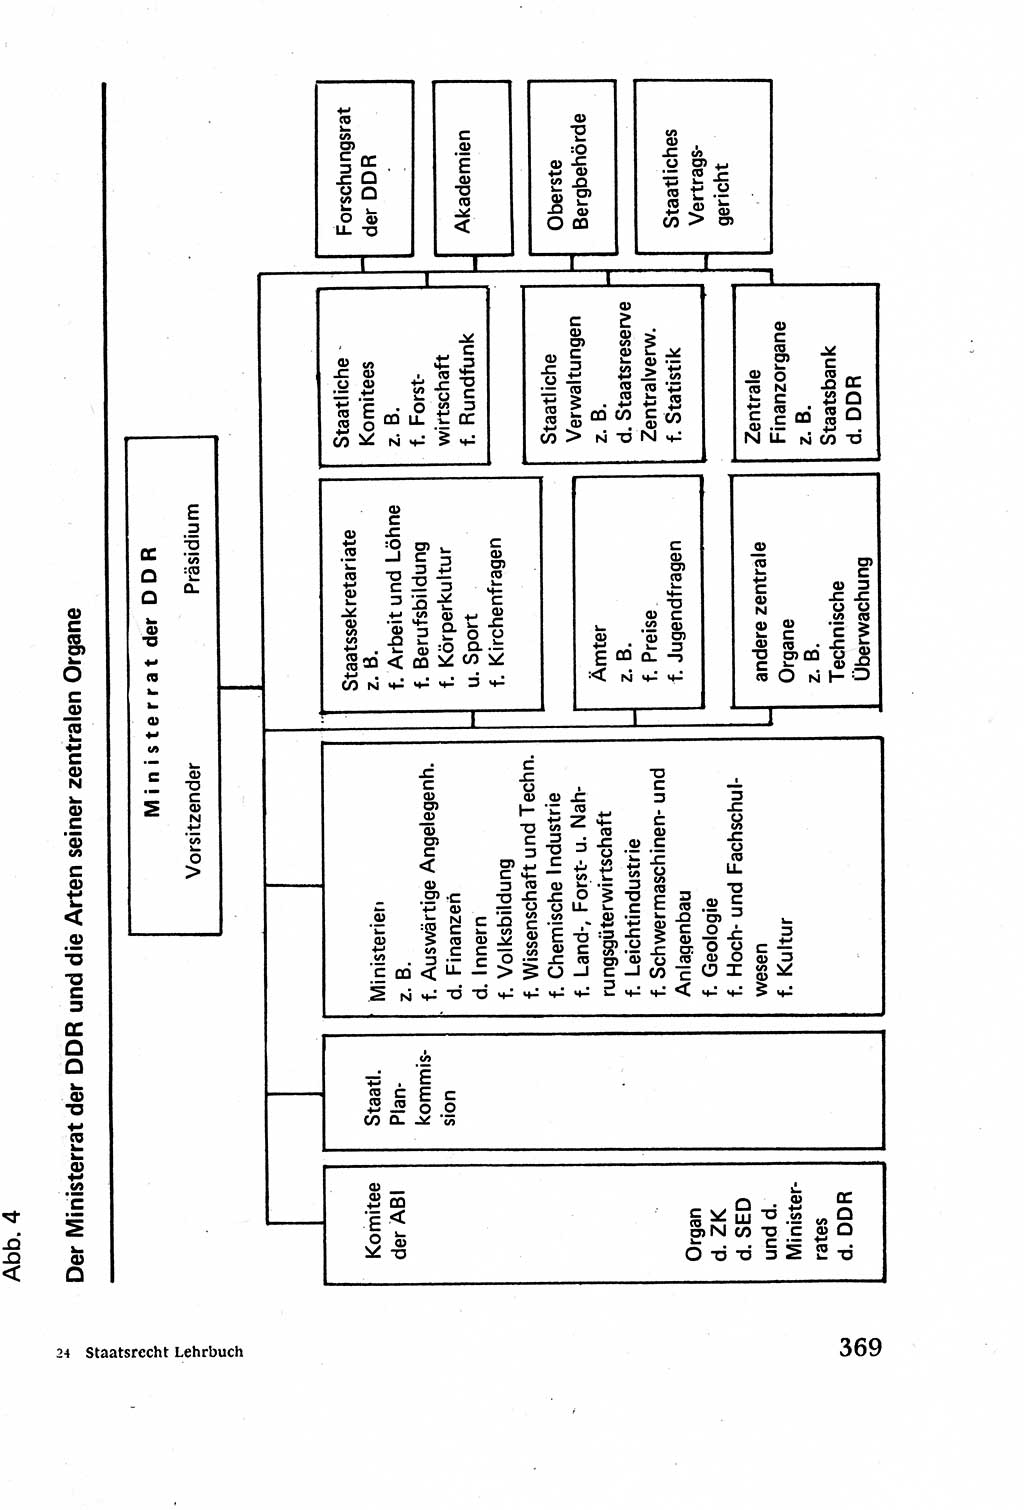 Staatsrecht der DDR (Deutsche Demokratische Republik), Lehrbuch 1977, Seite 369 (St.-R. DDR Lb. 1977, S. 369)